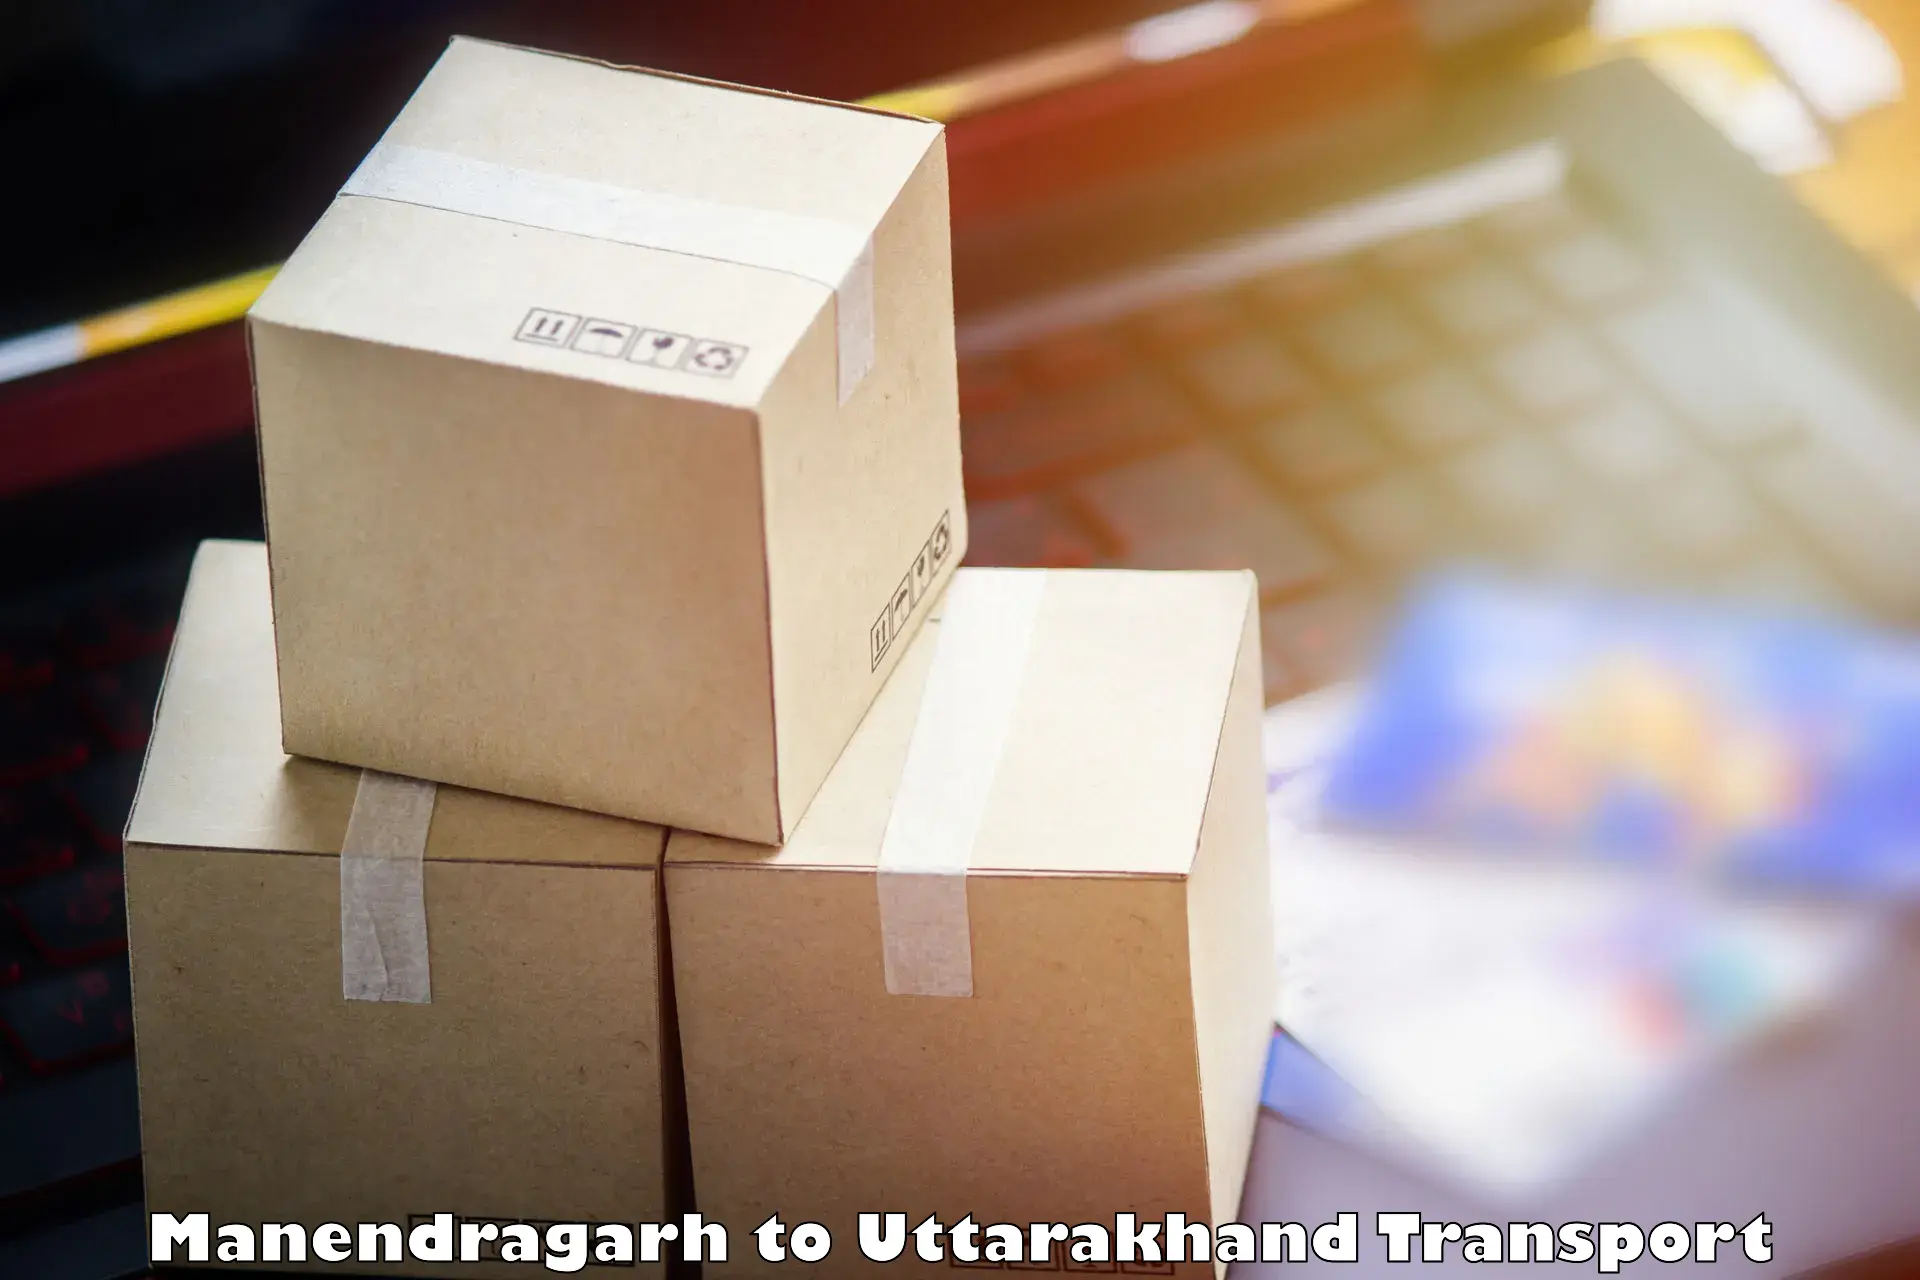 International cargo transportation services Manendragarh to Tanakpur